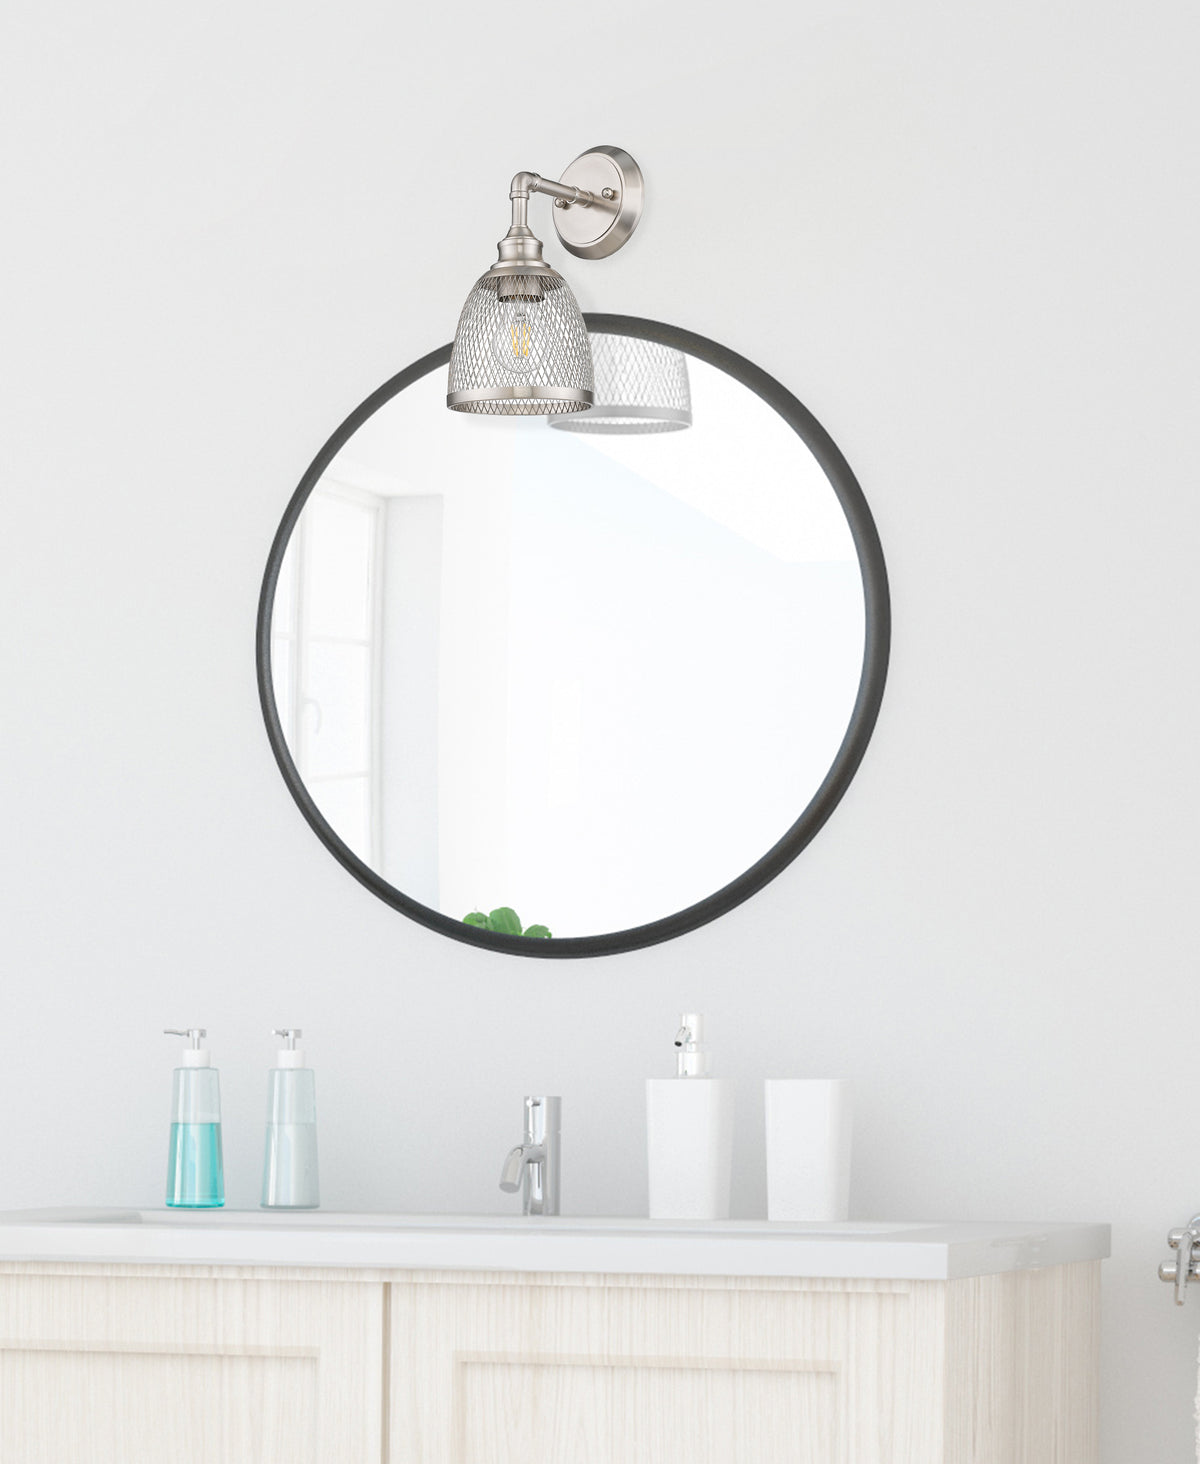 Brushed nickel vanity light fixtures with 1 light over mirror